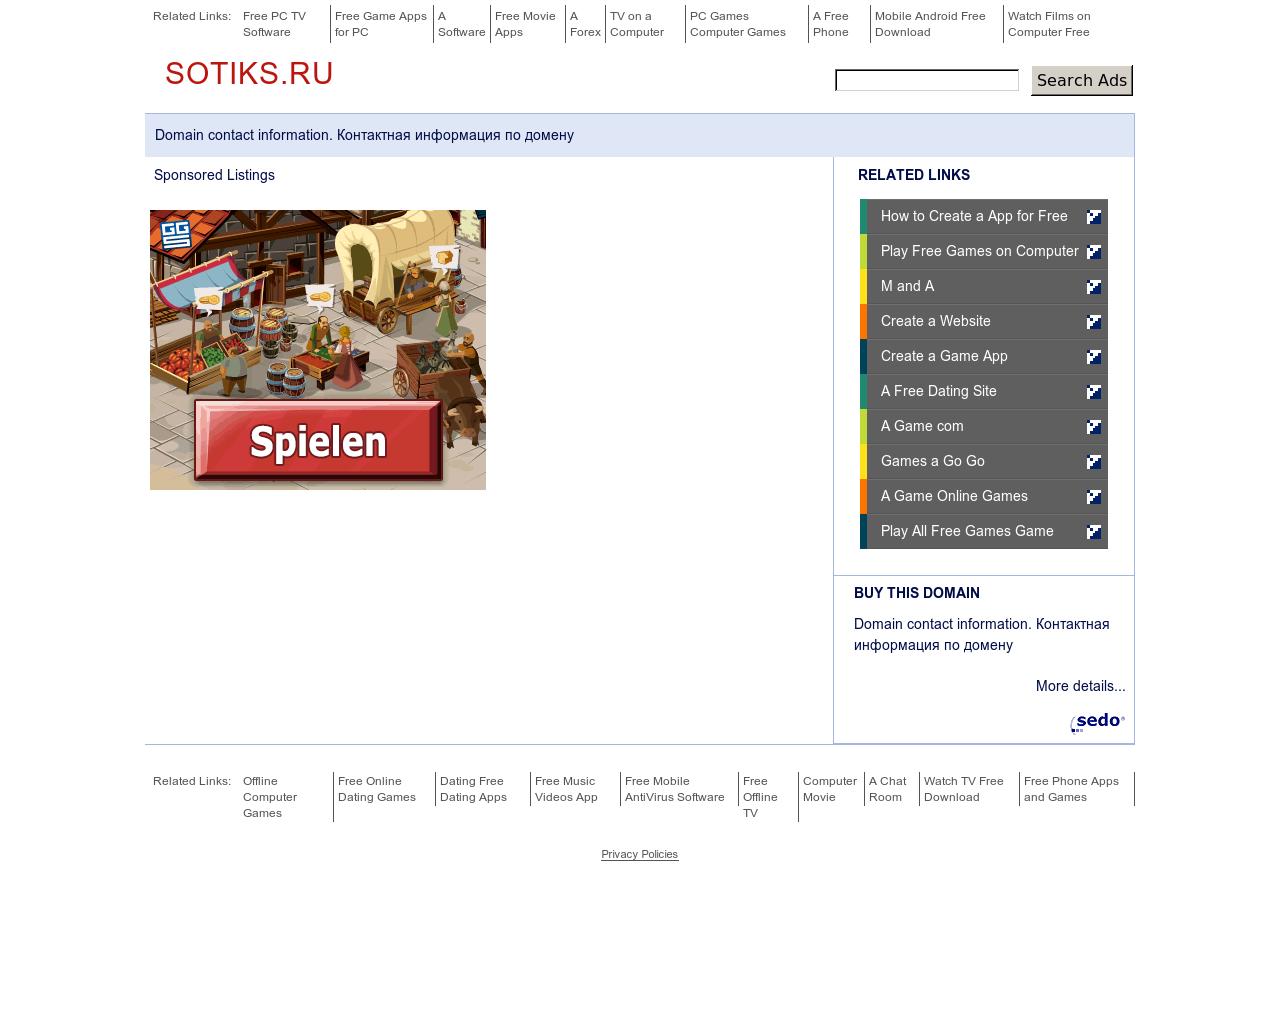 Изображение сайта sotiks.ru в разрешении 1280x1024